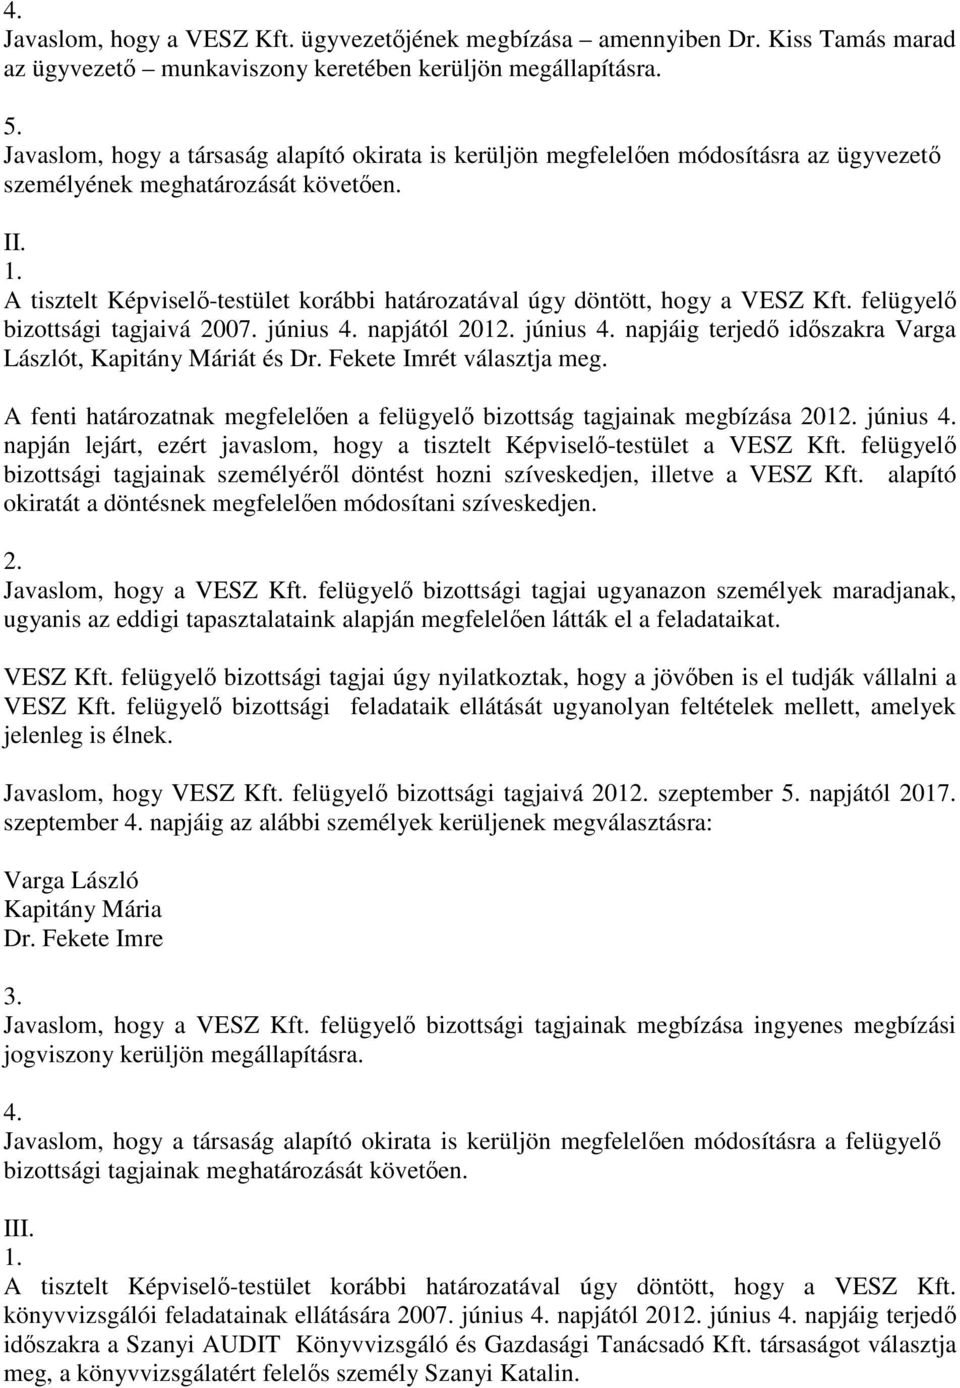 A tisztelt Képviselı-testület korábbi határozatával úgy döntött, hogy a VESZ Kft. felügyelı bizottsági tagjaivá 2007. június 4. napjától 2012. június 4. napjáig terjedı idıszakra Varga Lászlót, Kapitány Máriát és Dr.